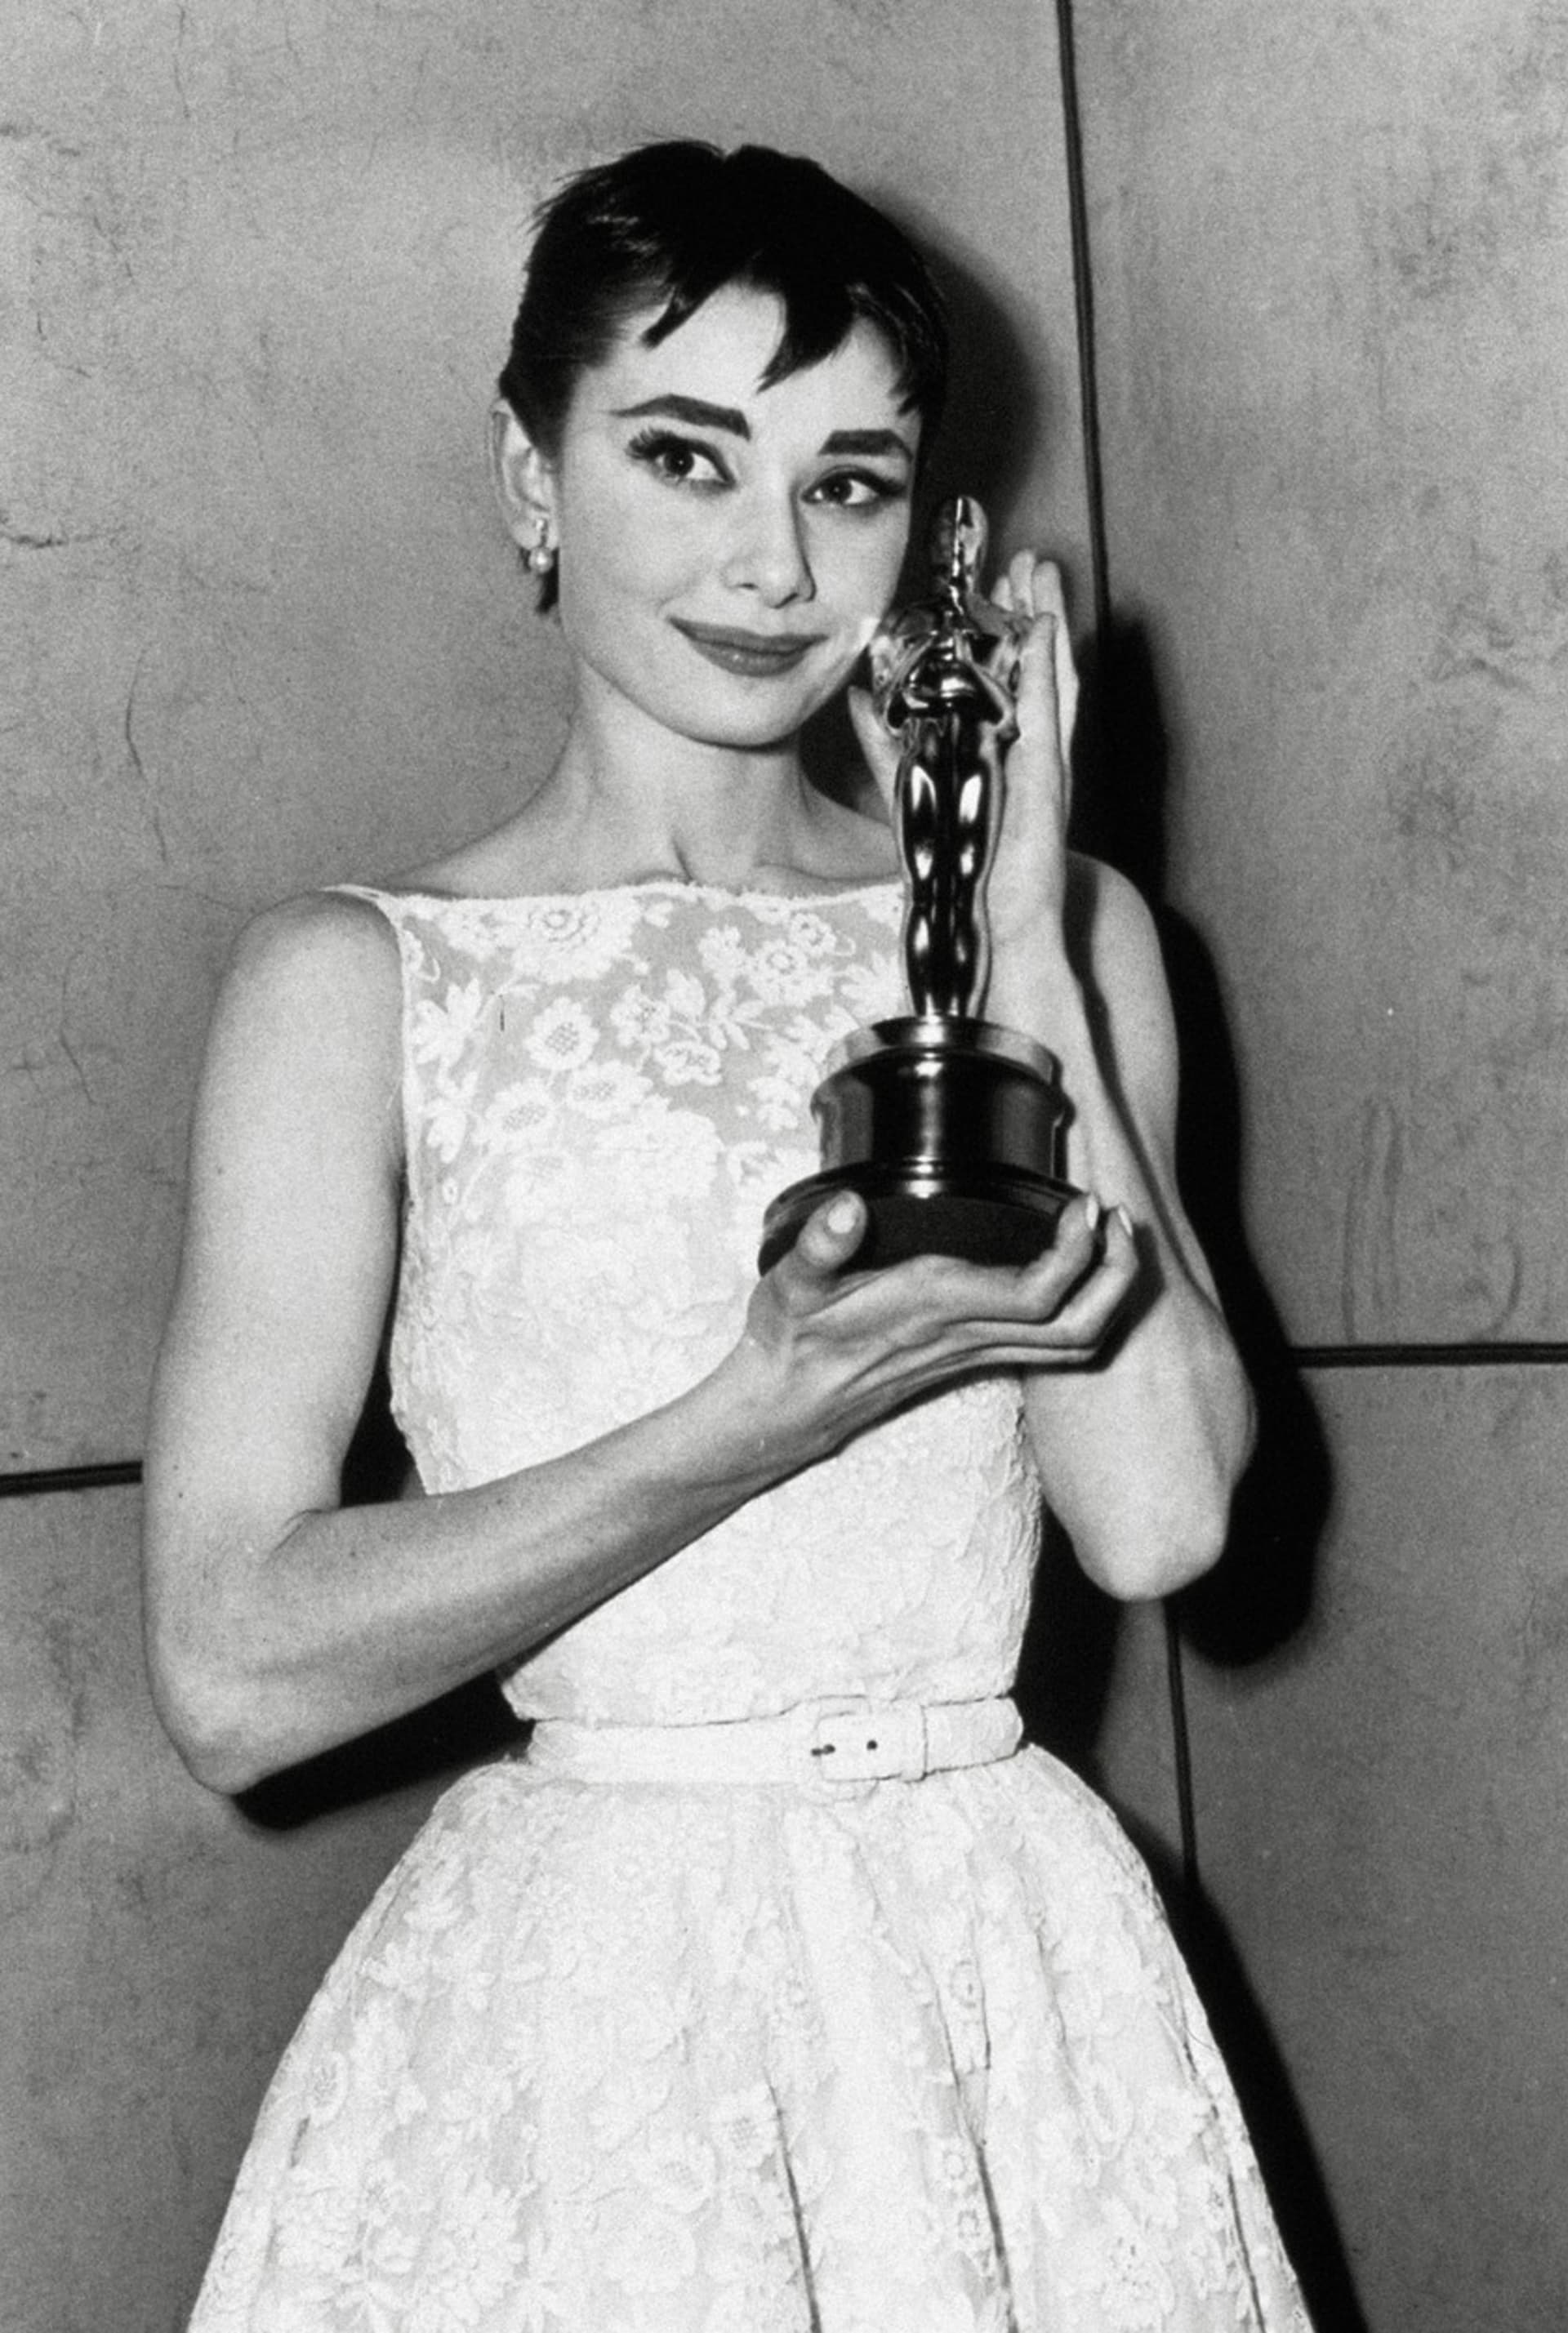 Prvního Oscara slavná herečka převzala právě v šatech od Givenchyho.